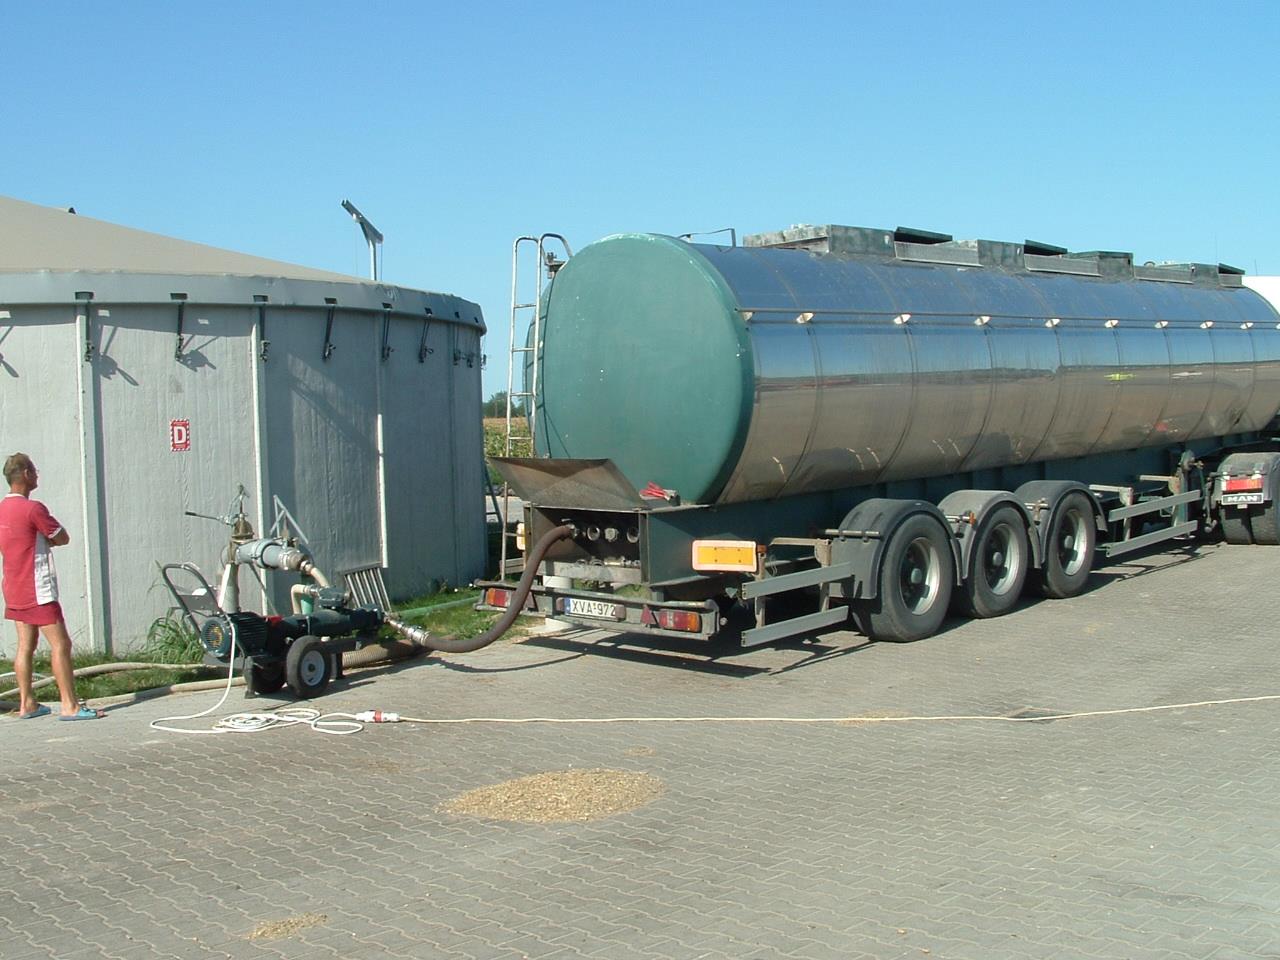 Üzemi, kísérleti próba leírása, eredményei A bor tartálykocsiban érkezett a biogáz üzembe, ahol az alapanyag fogadó tartályba kerül előtárolásra.